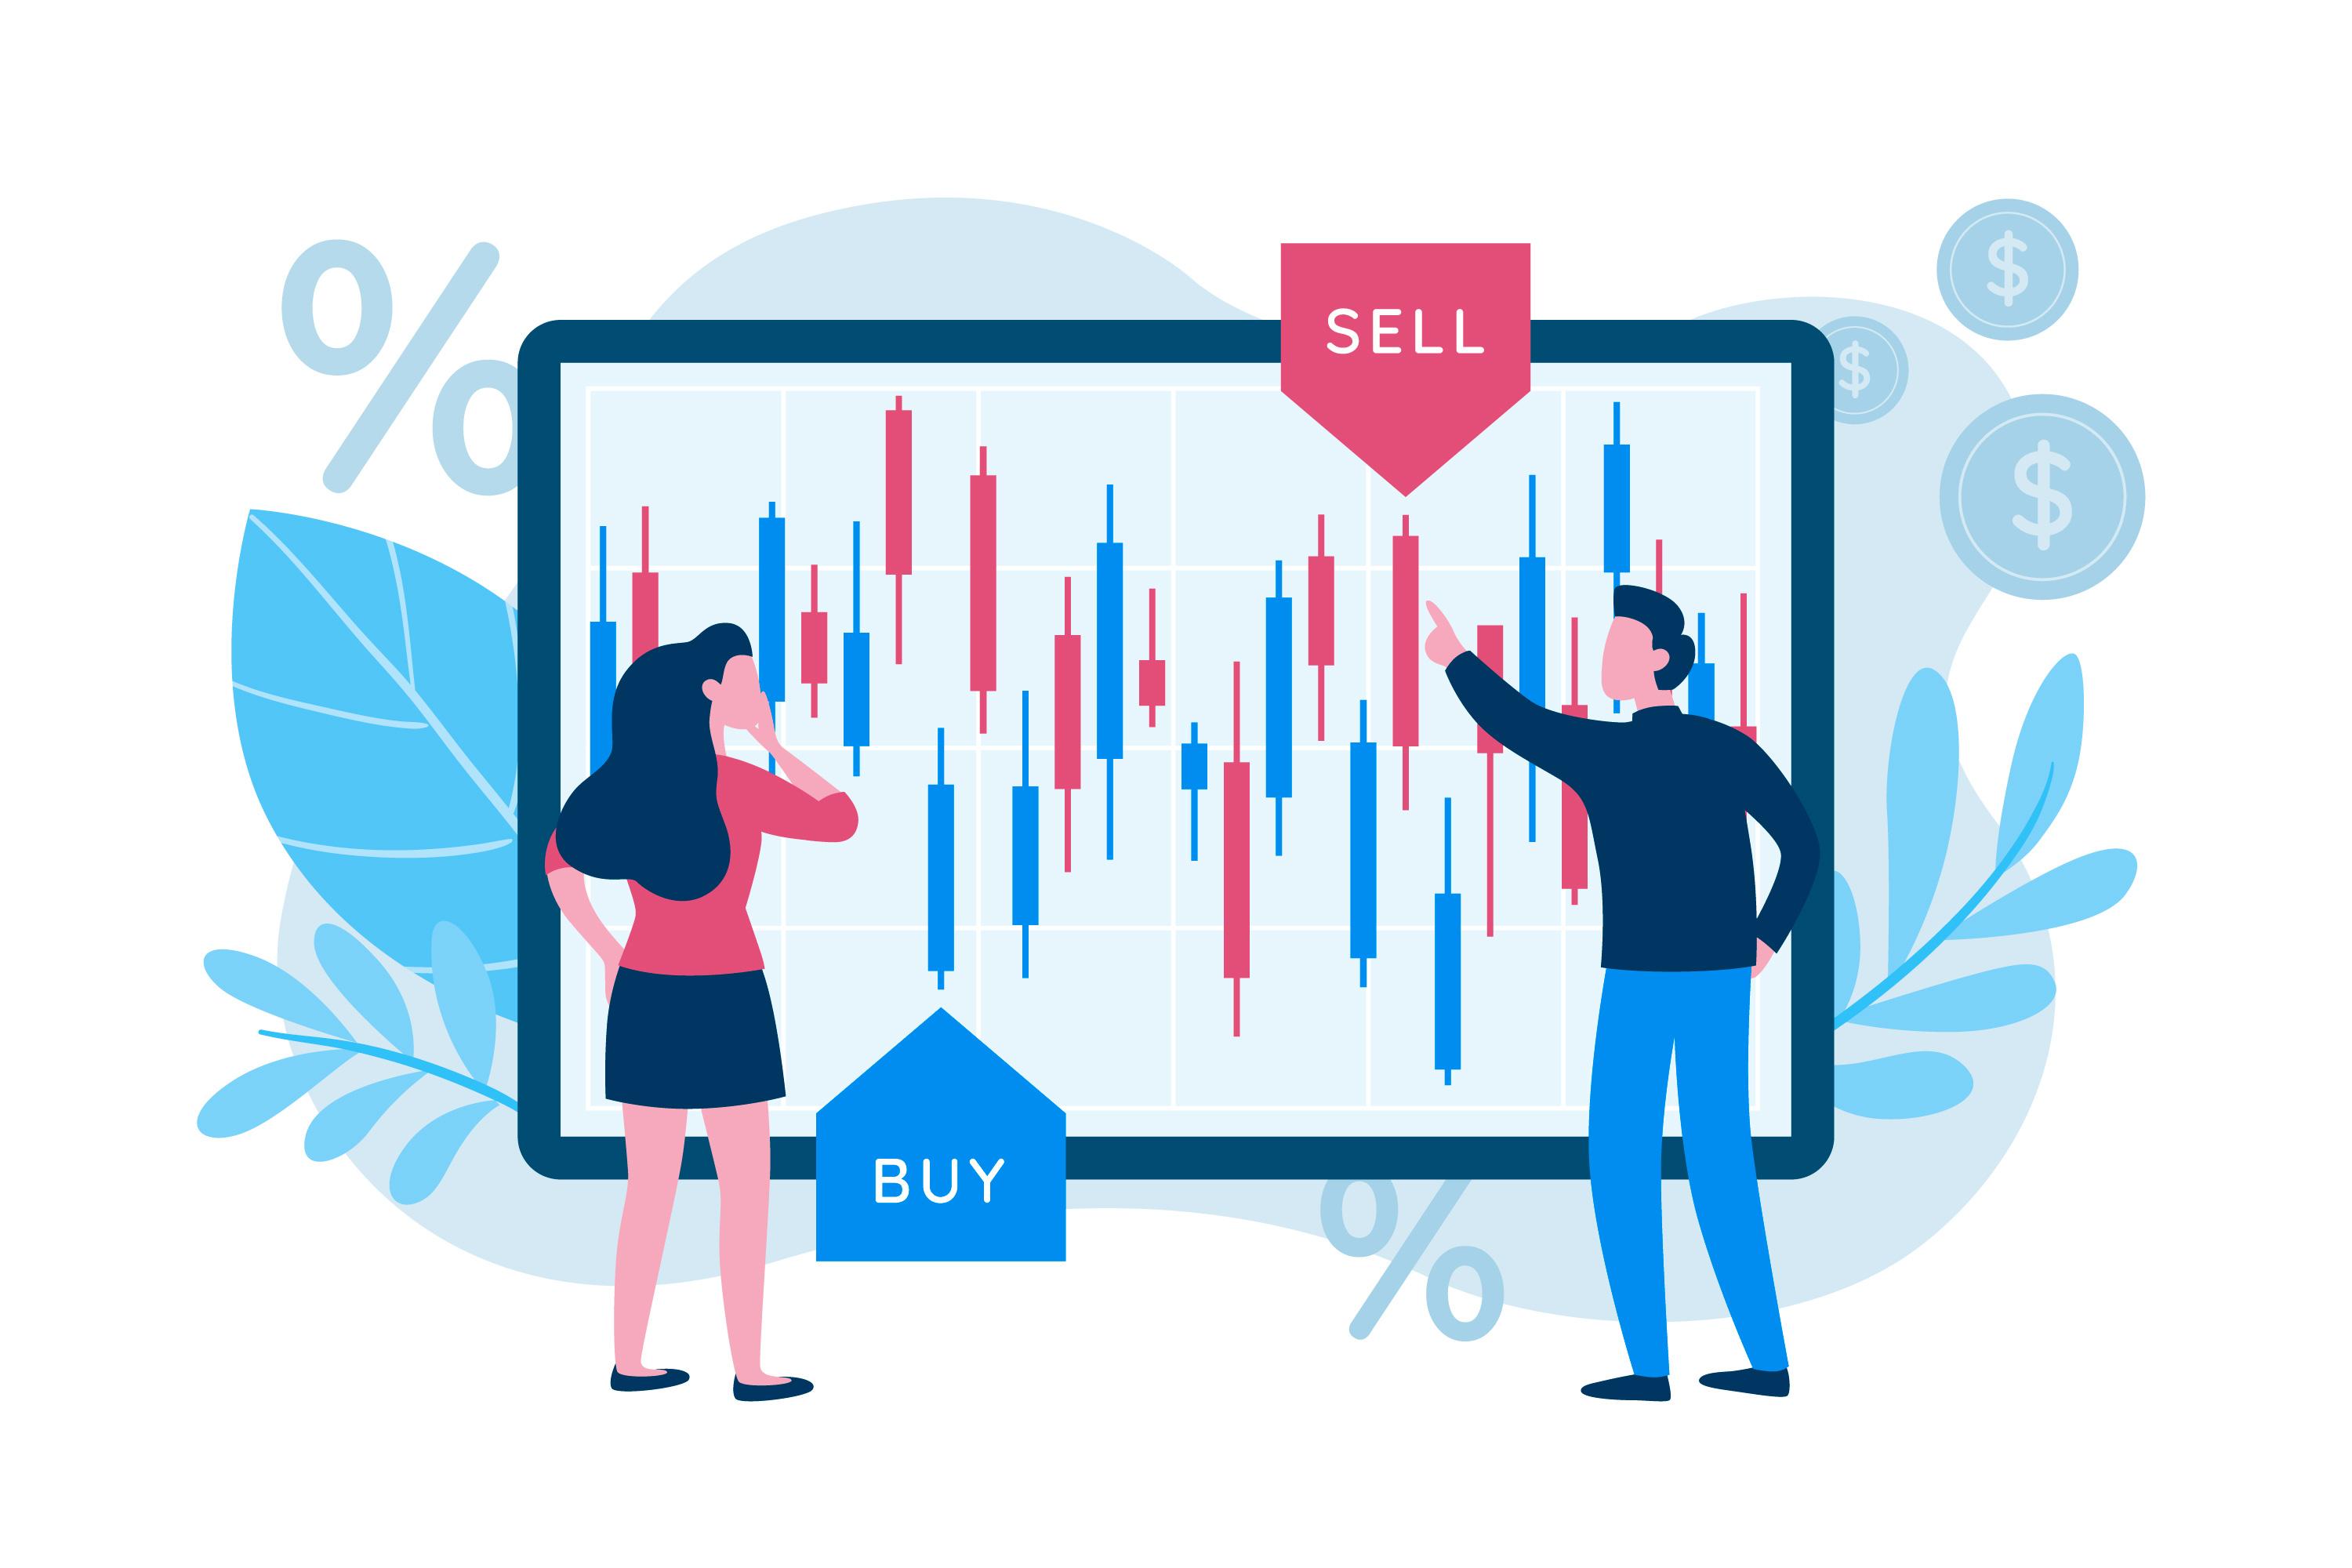 Herramientas técnicas de la plataforma TradingView: más herramientas, más beneficios